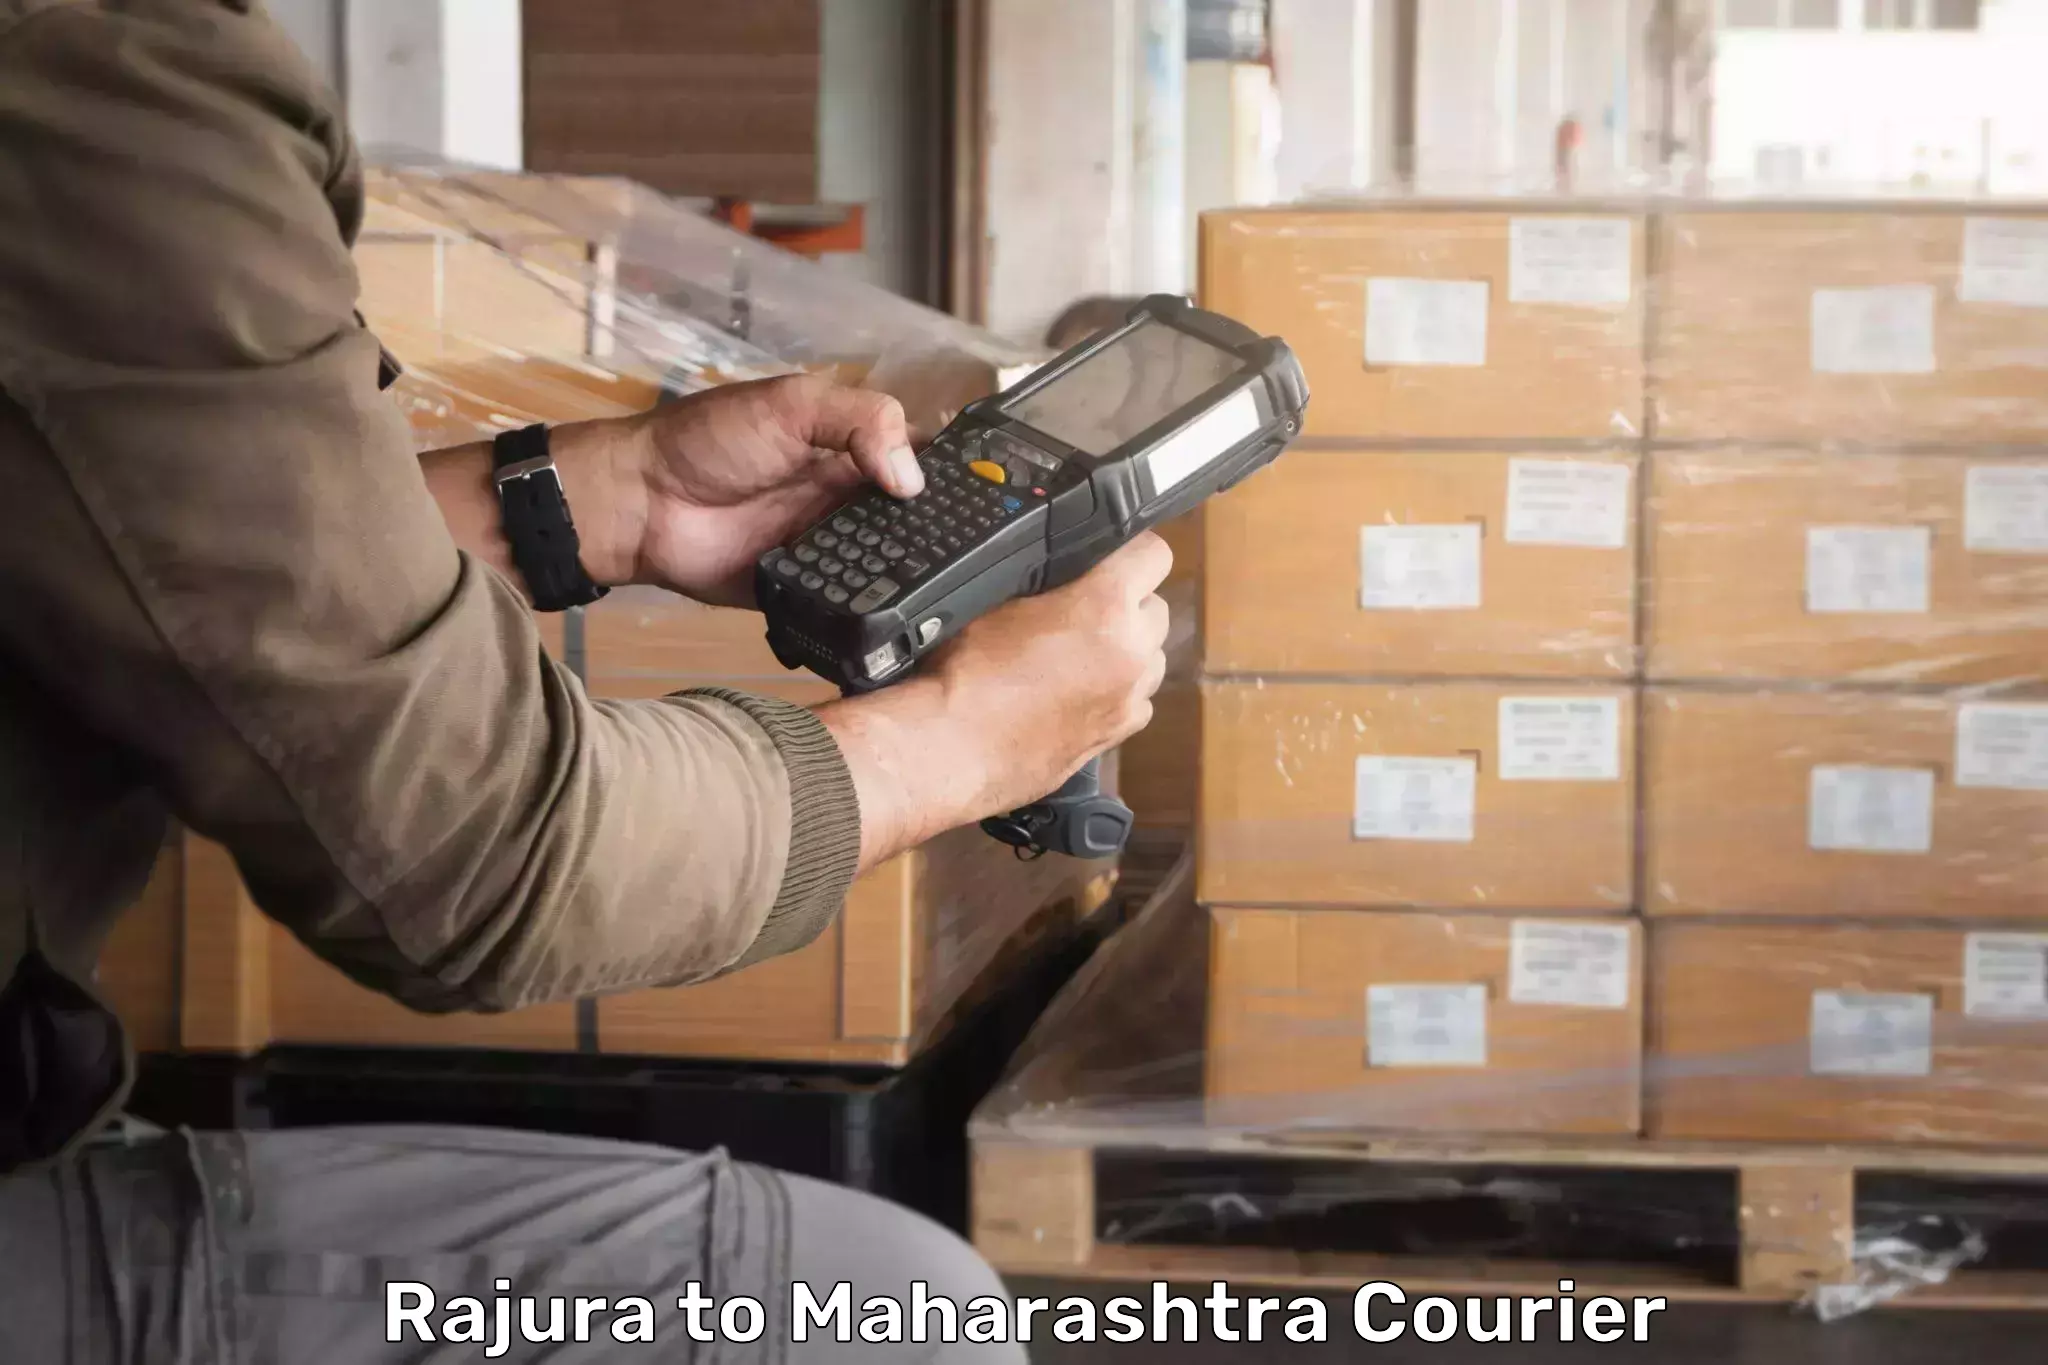 Cargo delivery service Rajura to Pusad